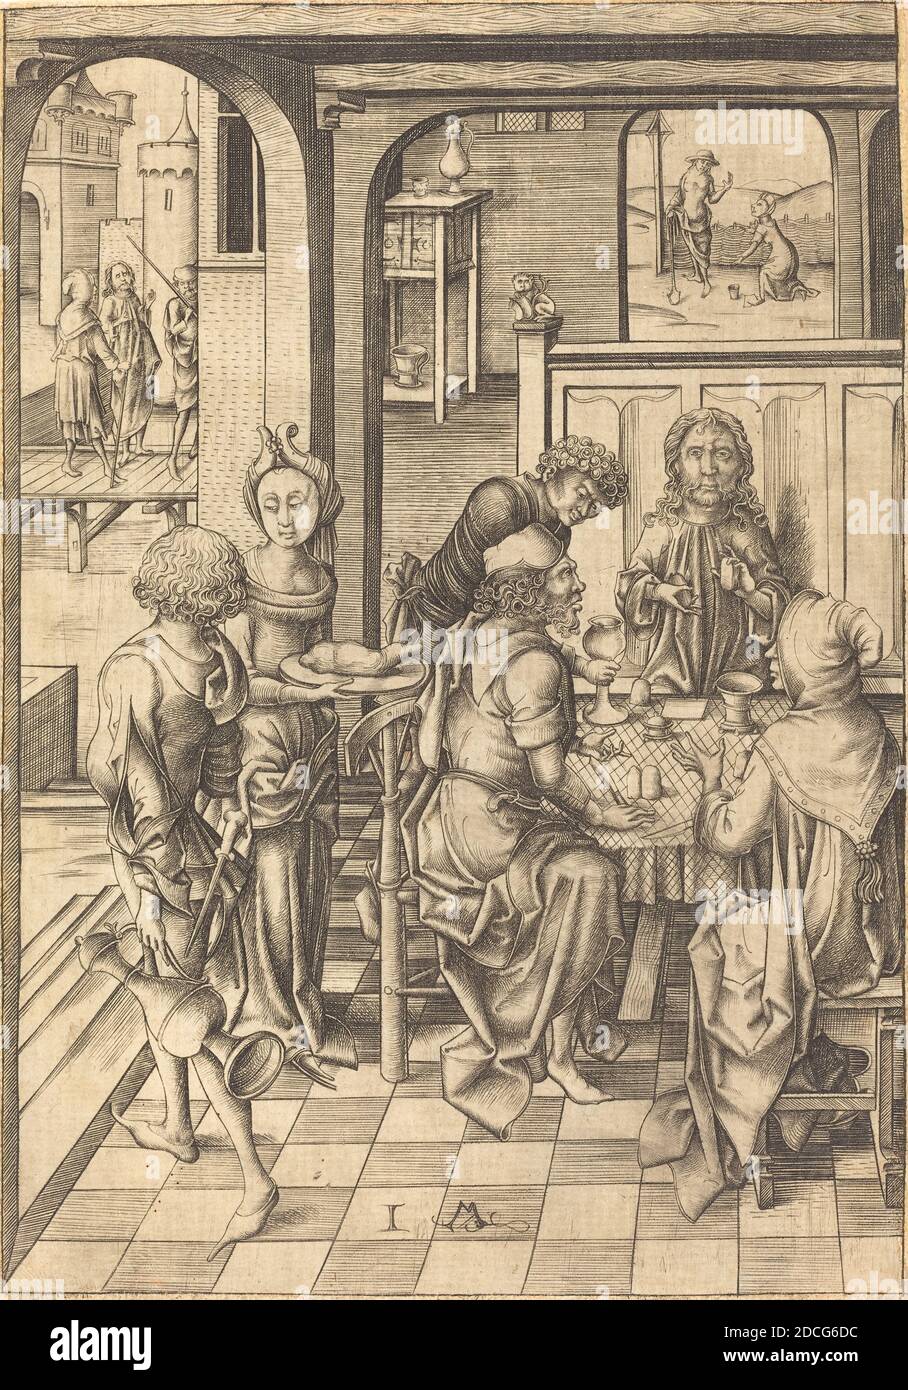 Israhel van Meckenem, (artist), German, c. 1445 - 1503, Christ at Emmaus, Twelve Scenes of the Pasion, (series), c. 1480, engraving Stock Photo